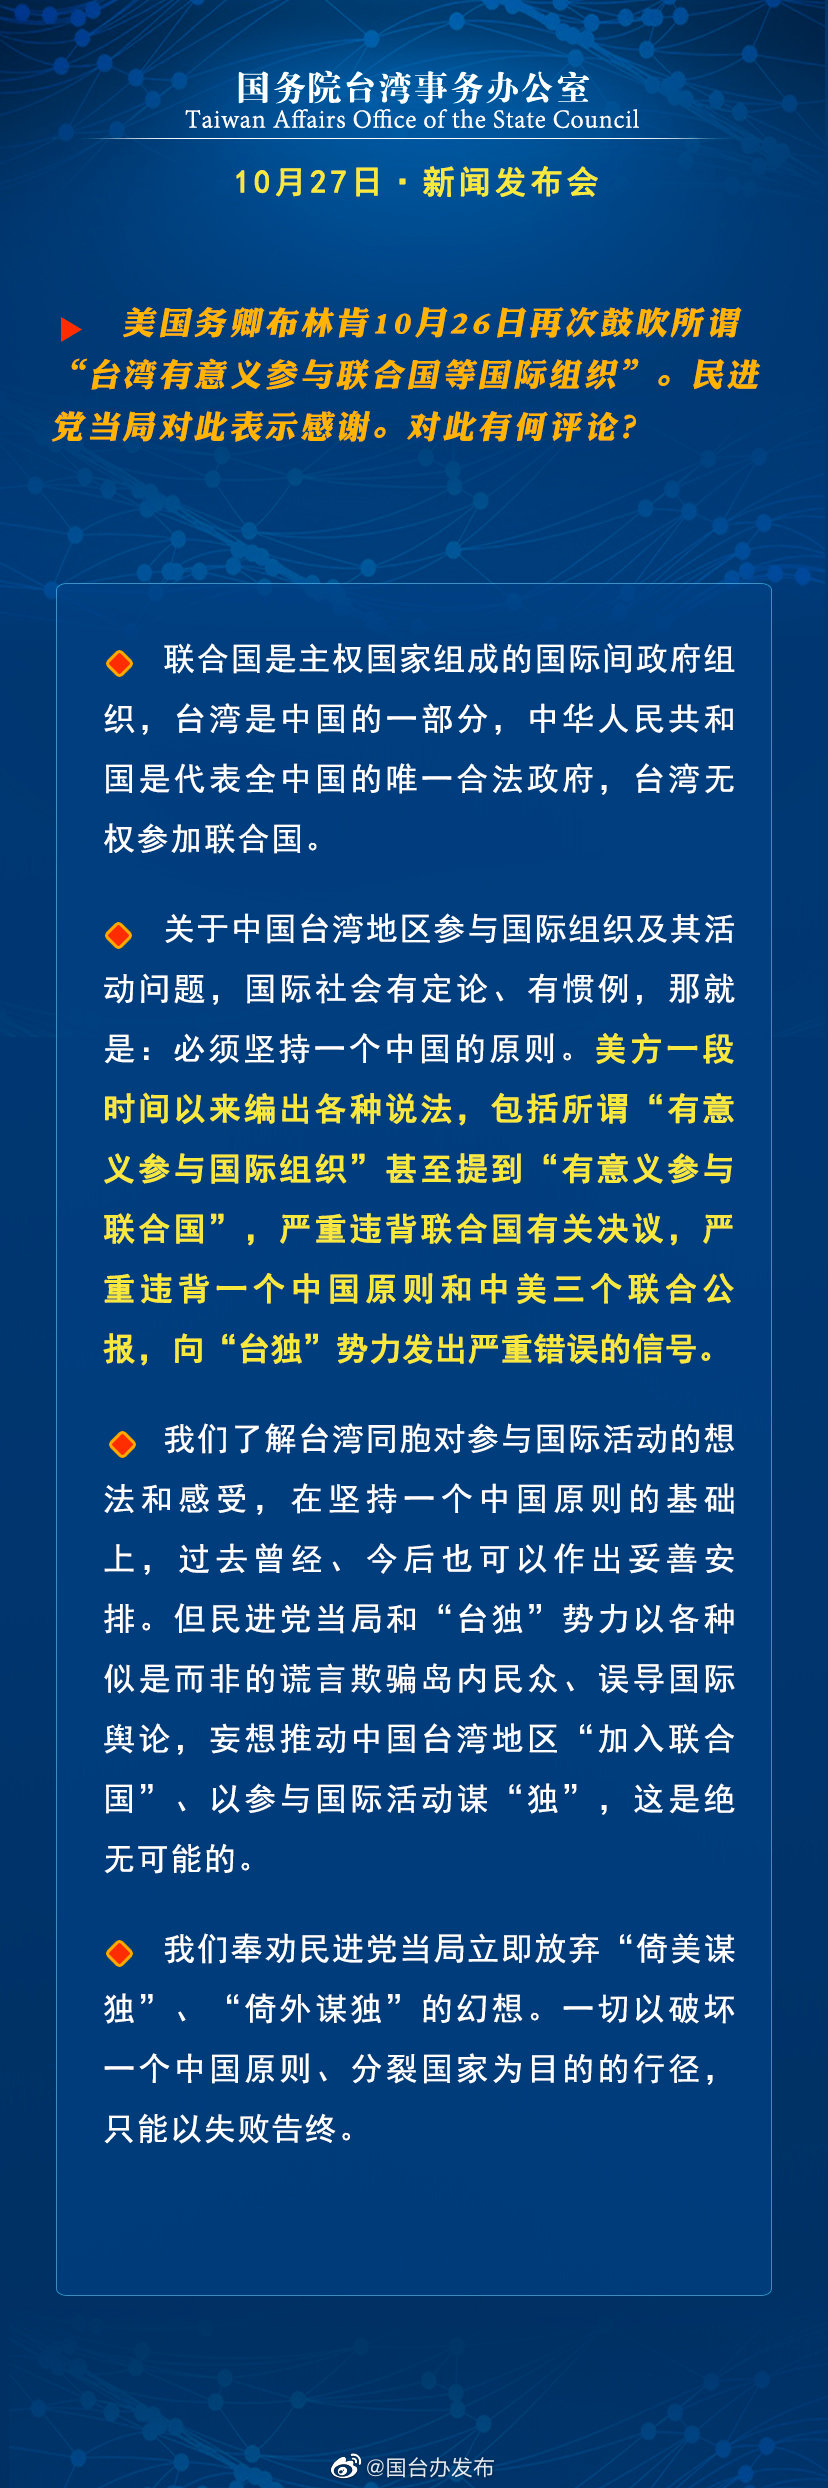 国务院台湾事务办公室10月27日·新闻发布会